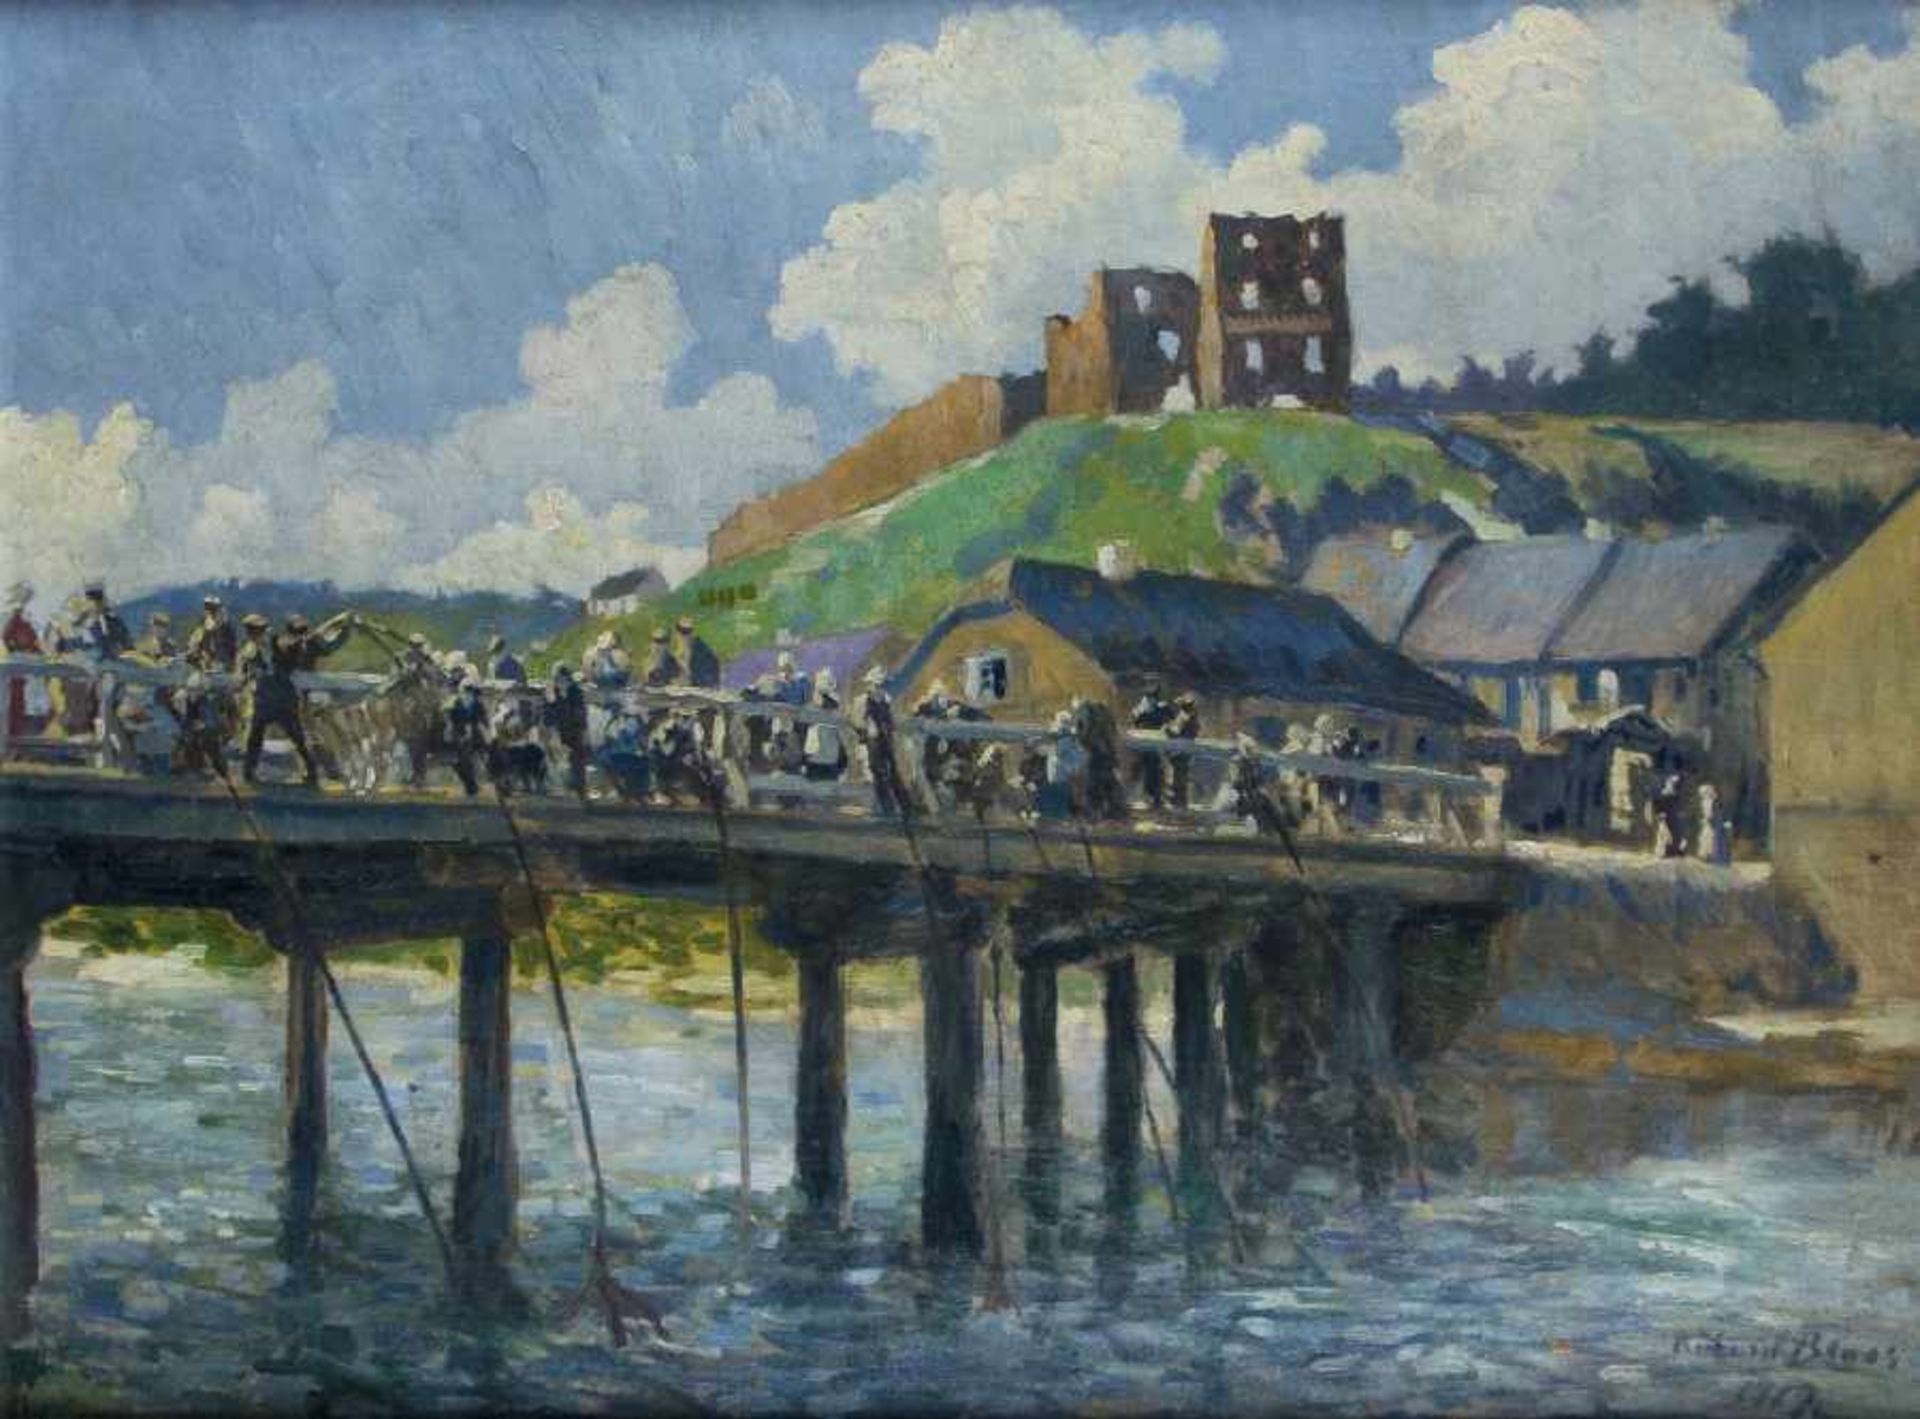 BLOOS, Richard (1878-1957), "Belebte Brücke vor der Burg mit Anglern", Öl/Lwd., 66 x 88, unten